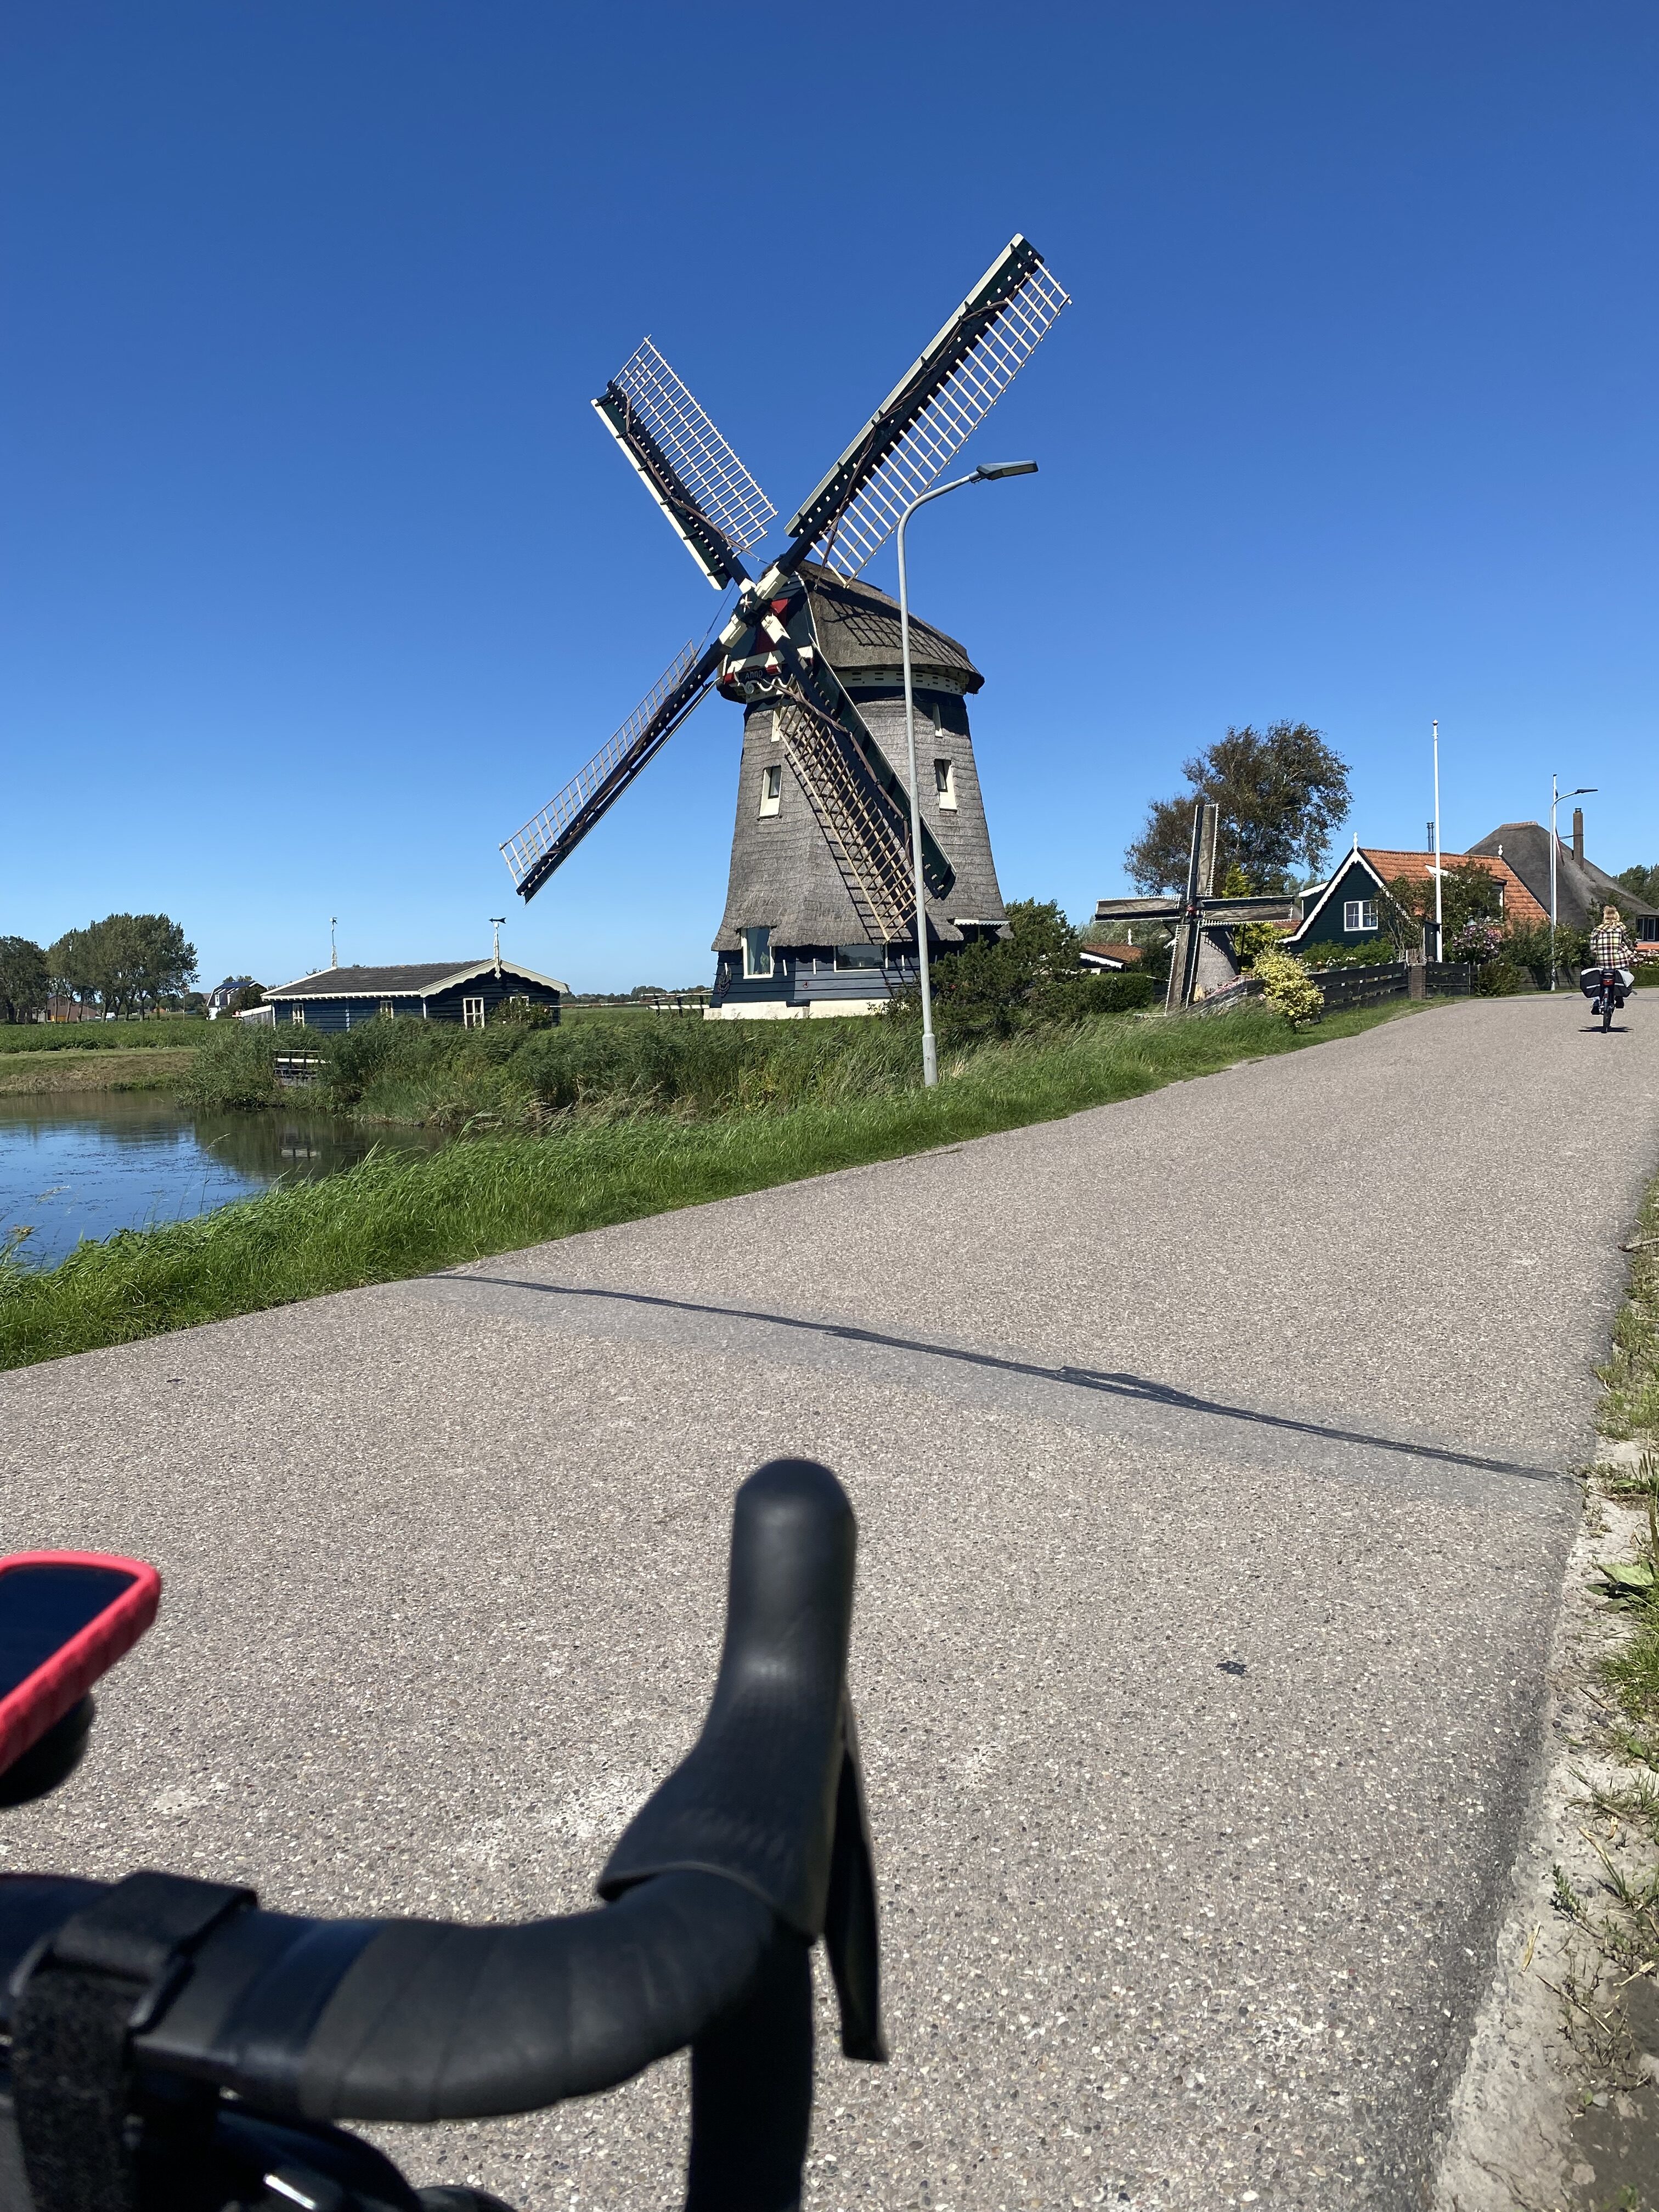 Windmolen in Nederlands landschap met racefiets stuur op voorgrond